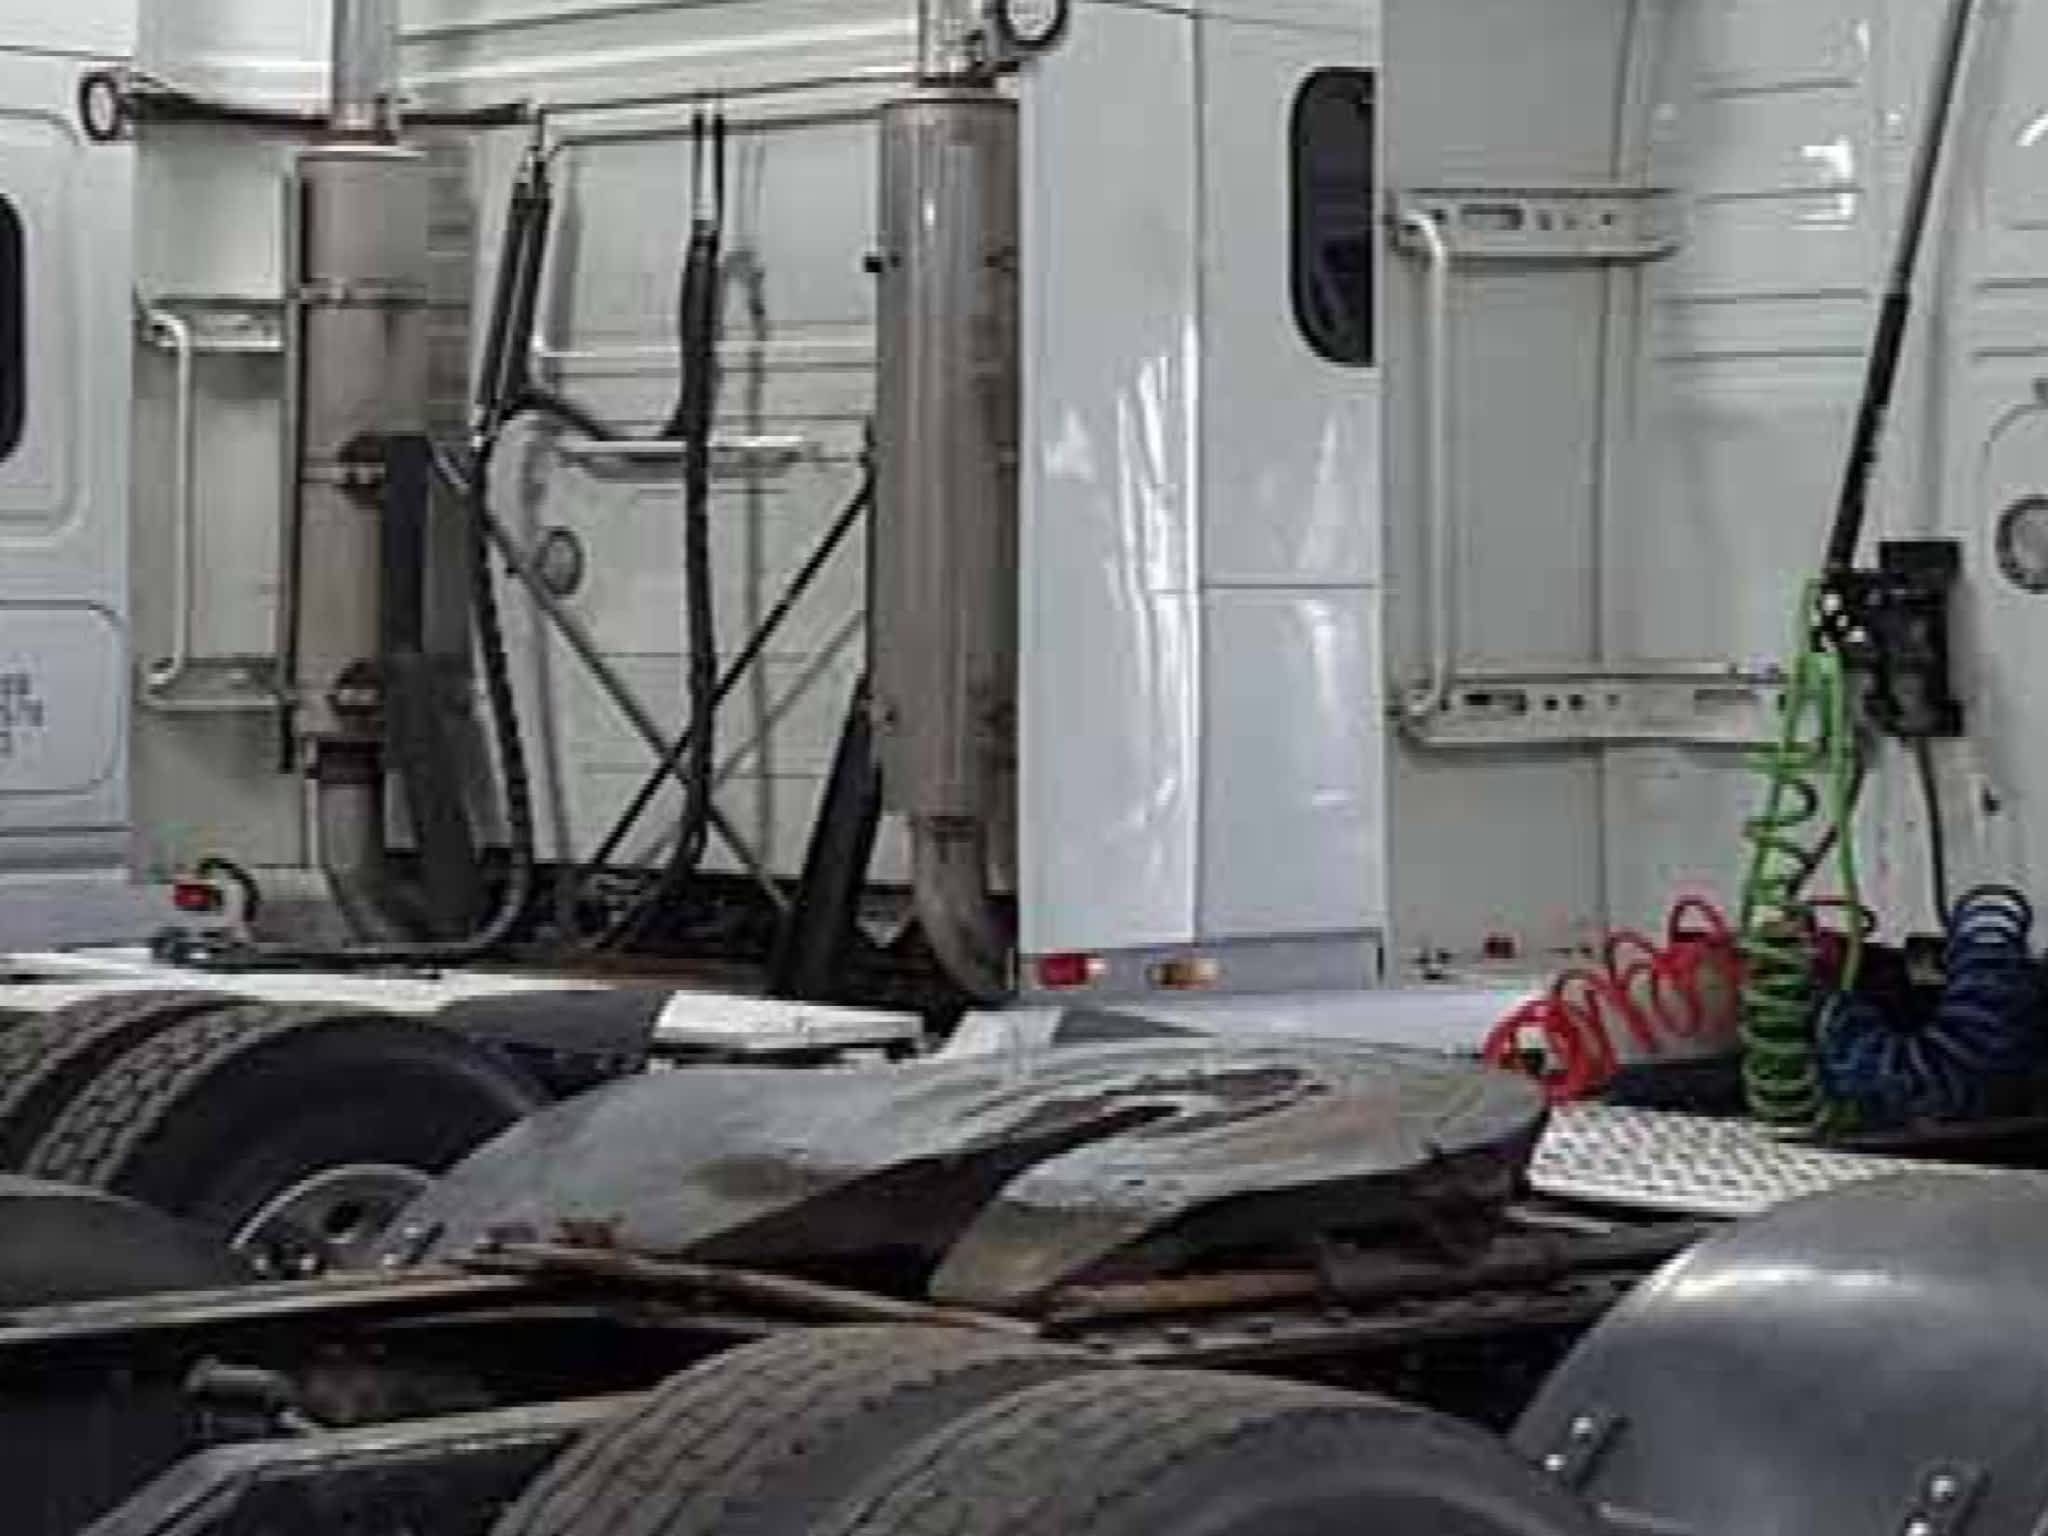 photo New Best Truck Repair & Tire Ltd